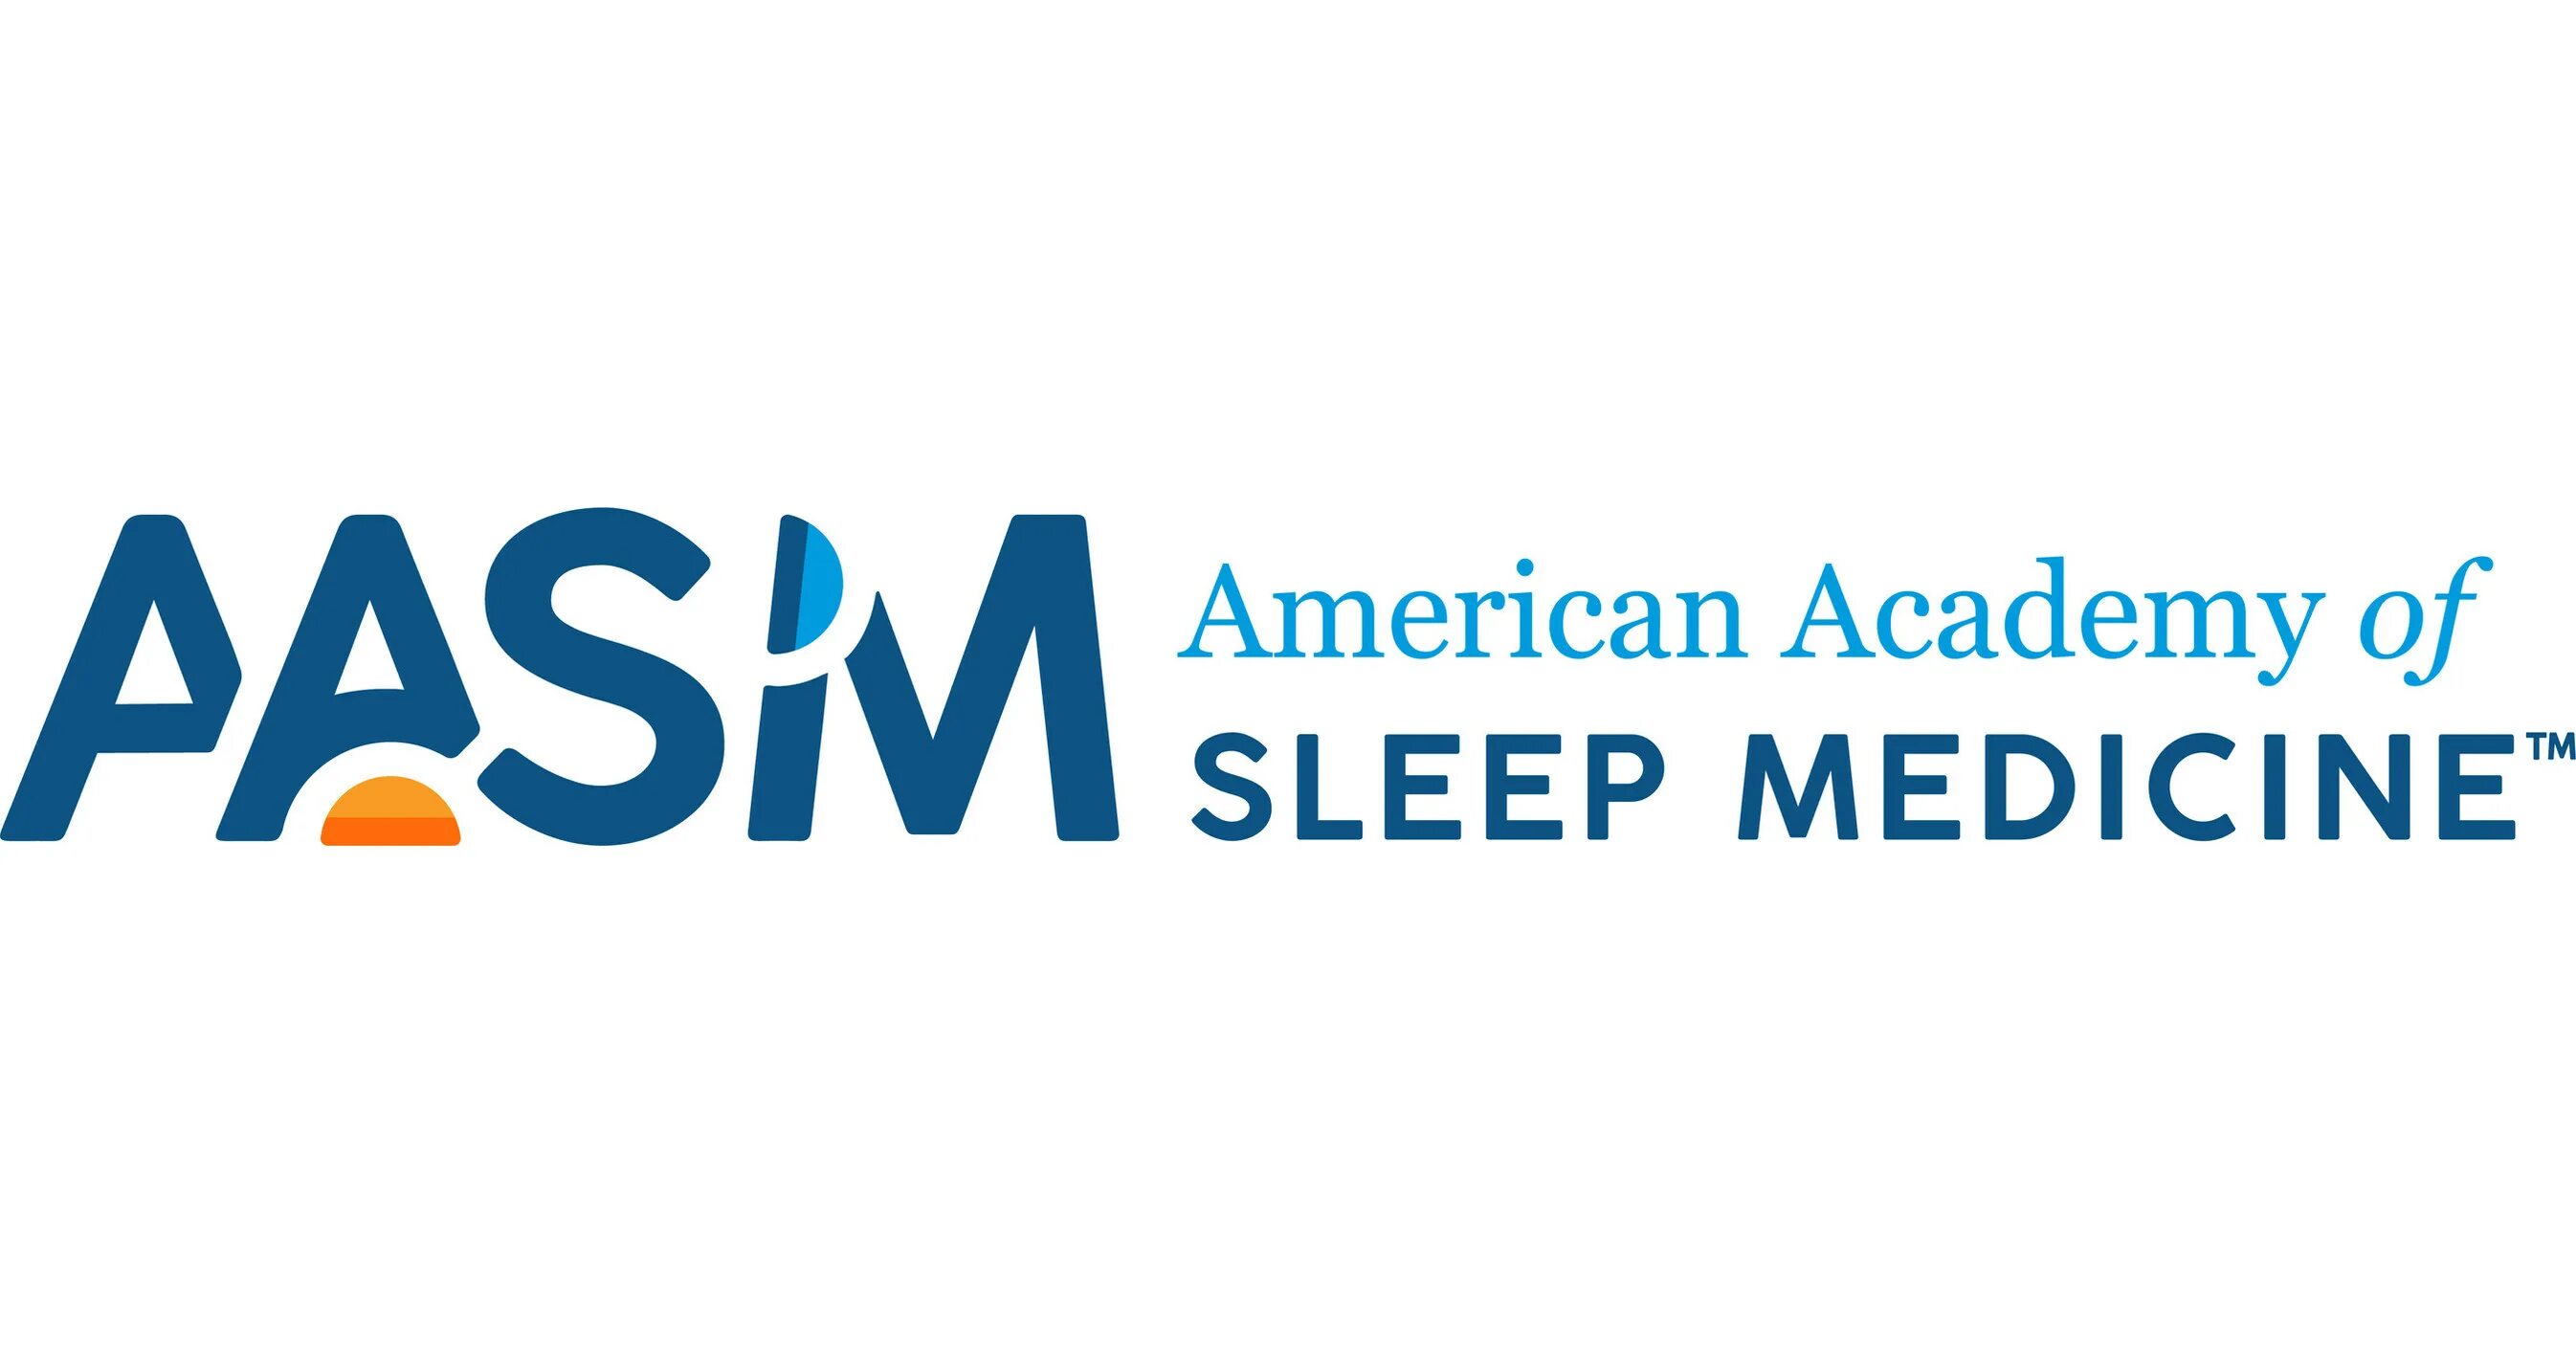 Sleep Academy. Американская Академия медицины сна. R$AASM\. Академия сна (sleeping Academy).